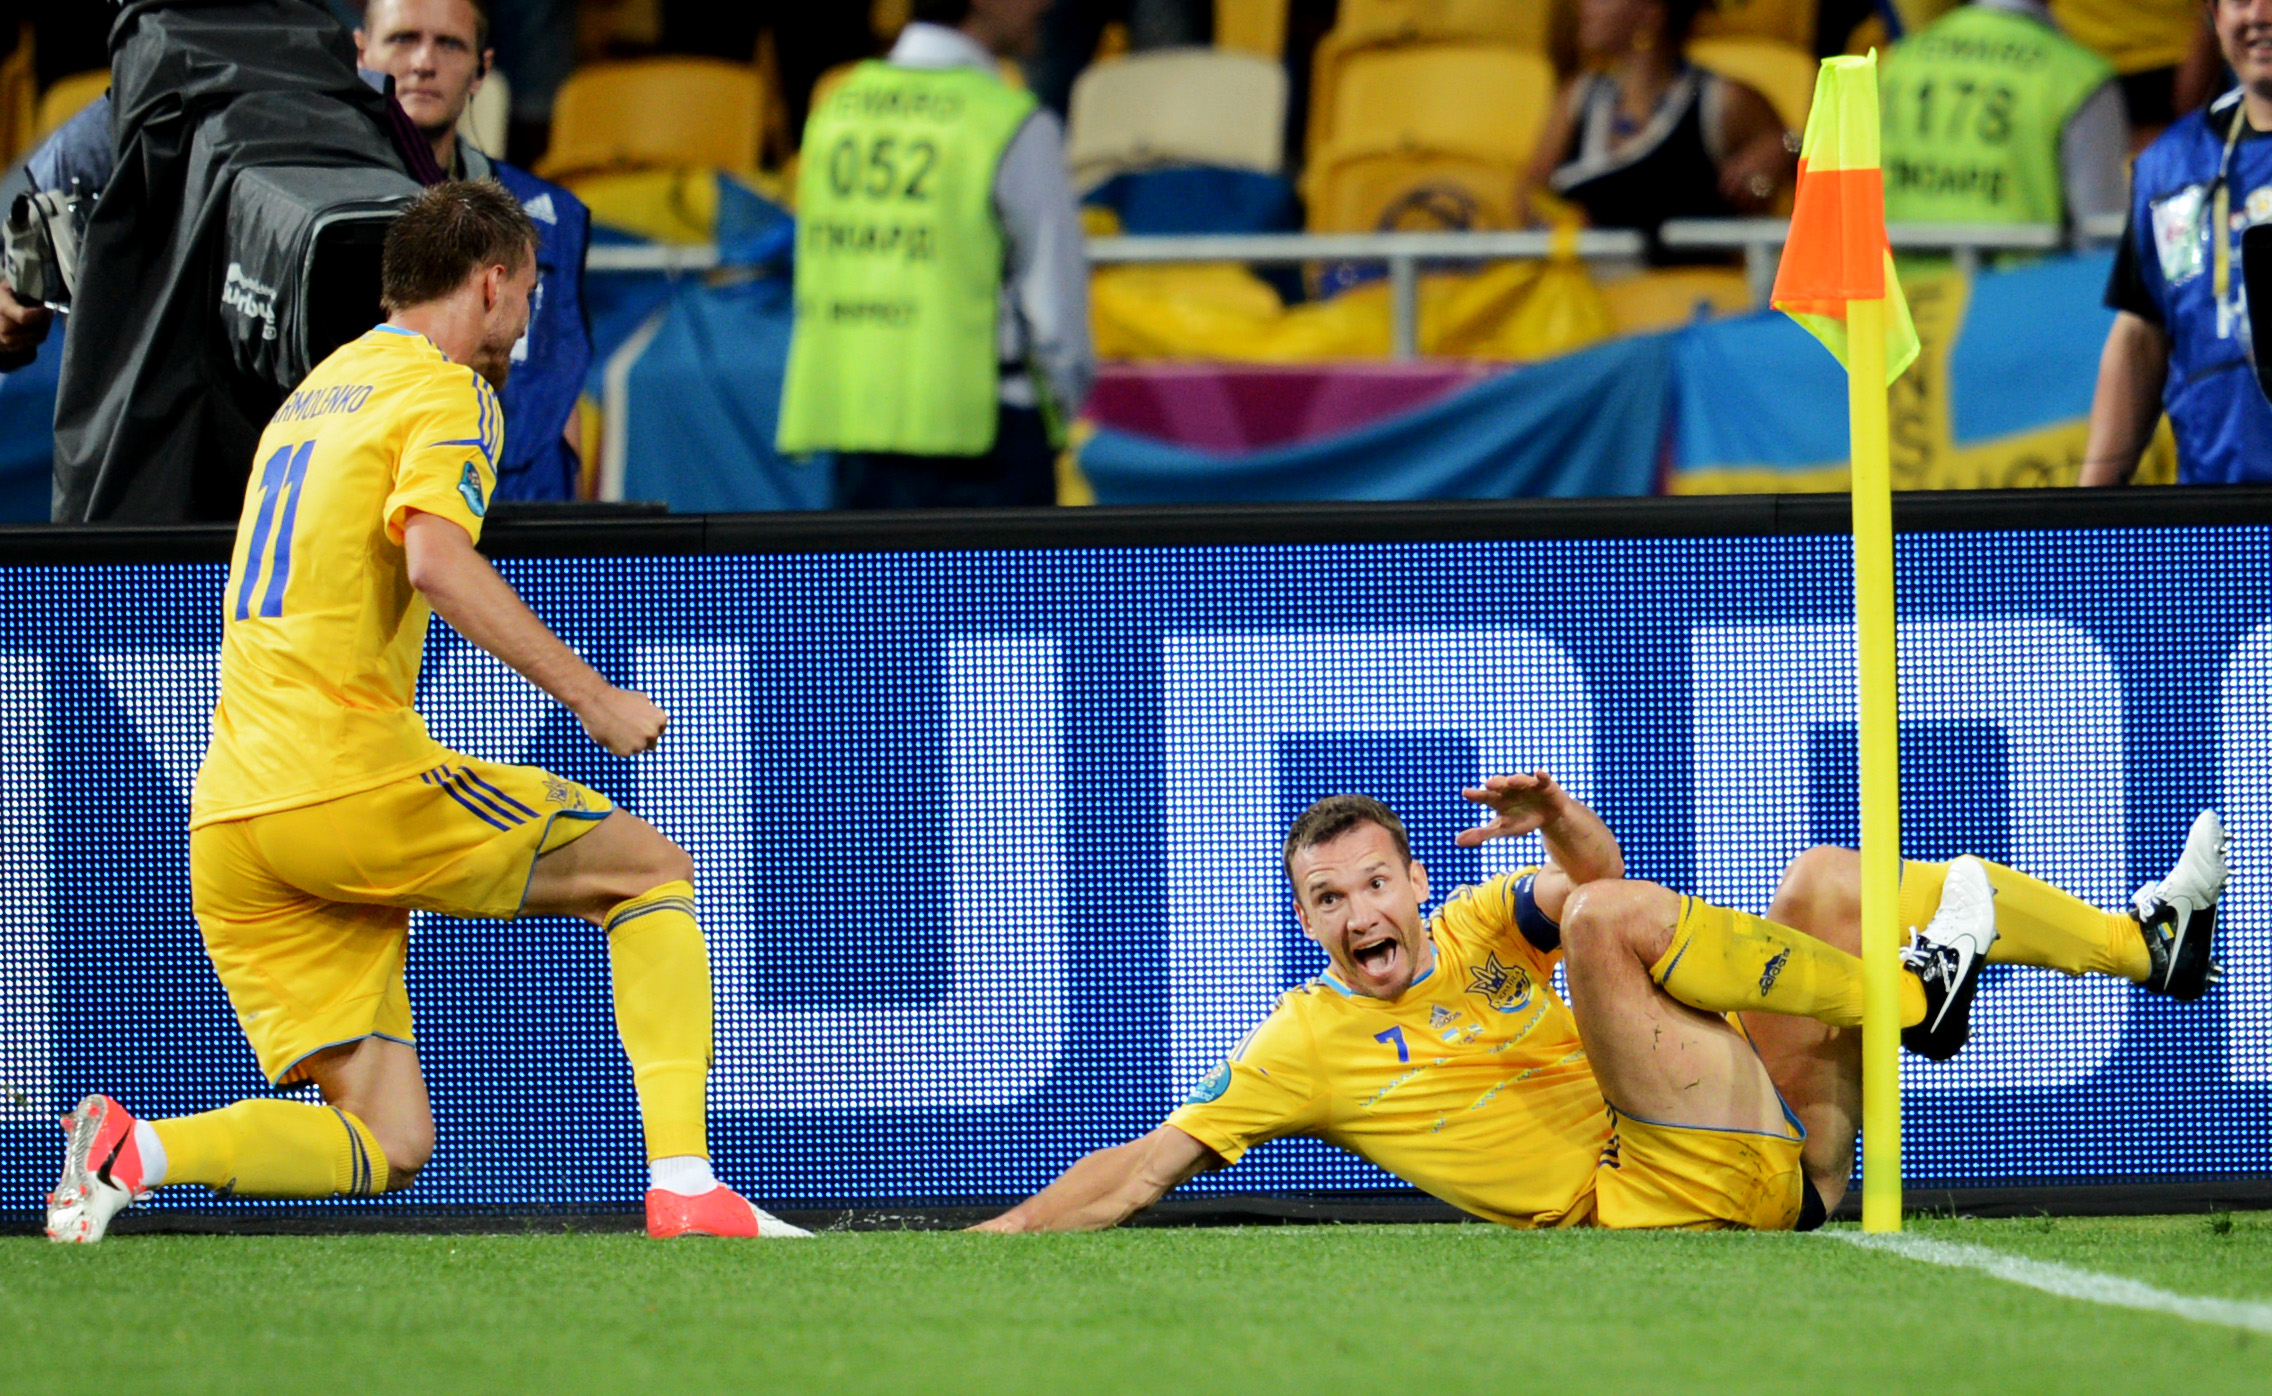 Sjevtjenko nickade in två mål på fem minuter och när Ukraina vann matchen med 2-1.